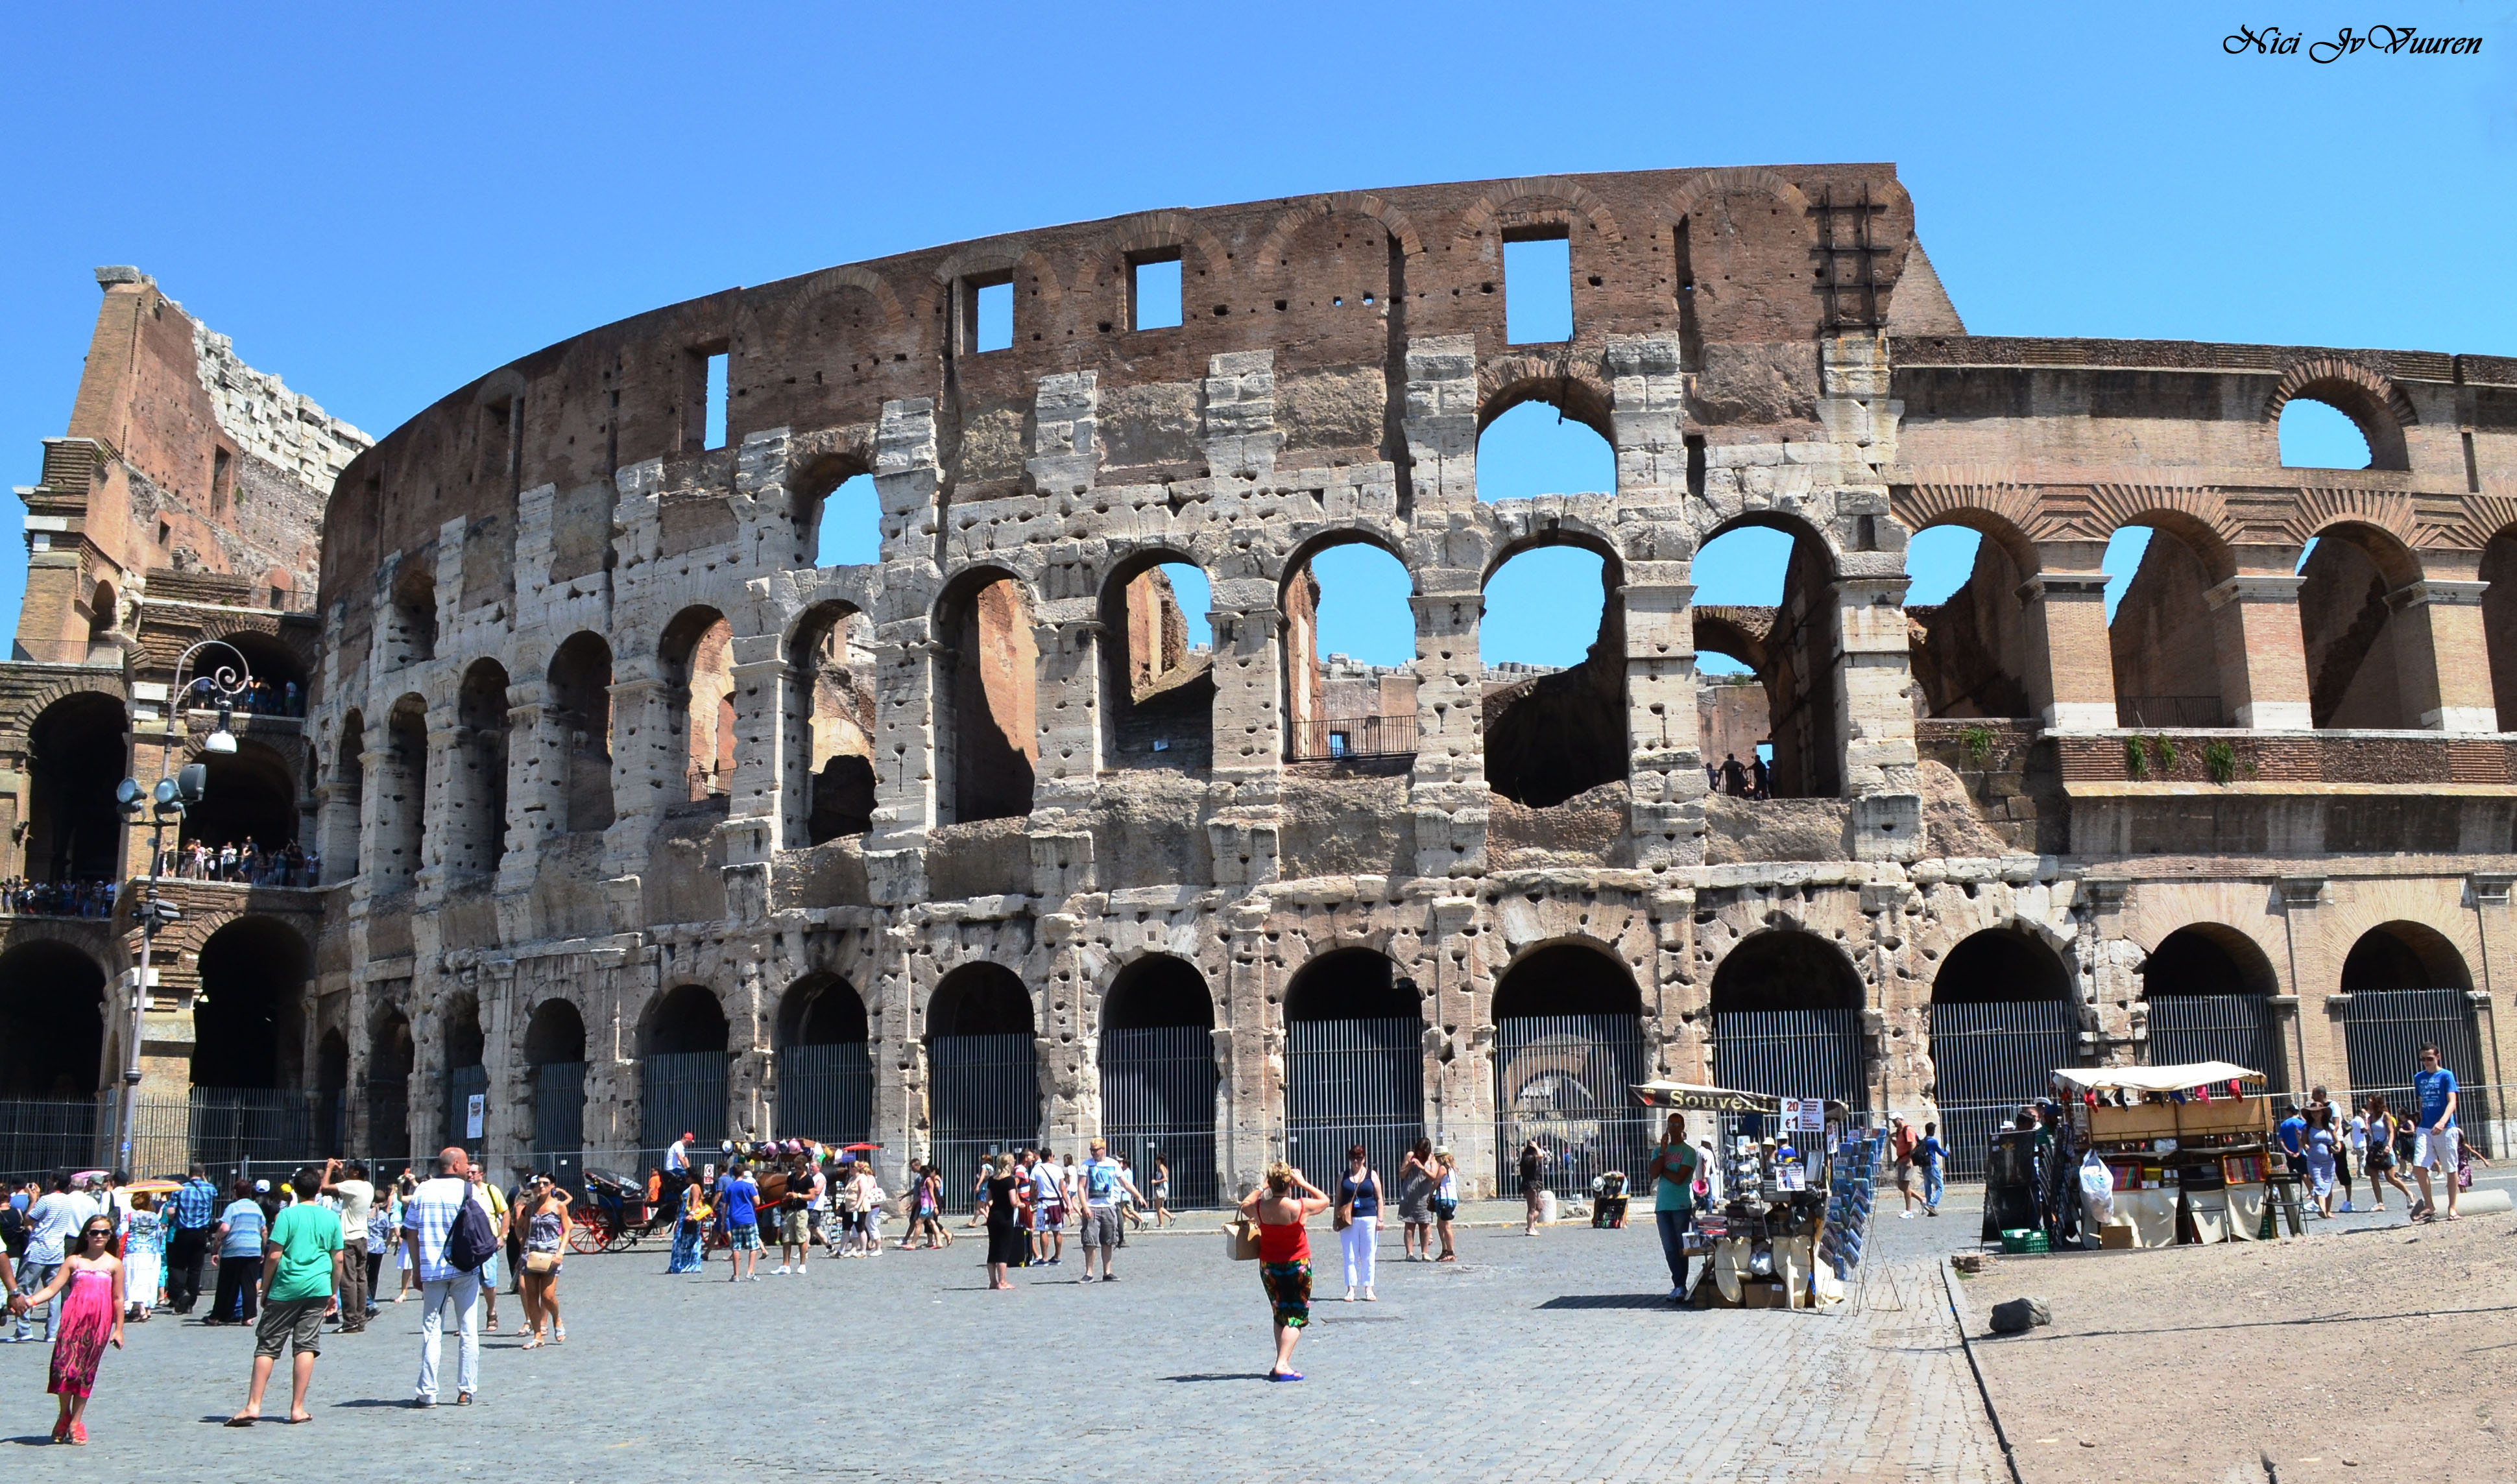 The Coliseum - Ancient Rome